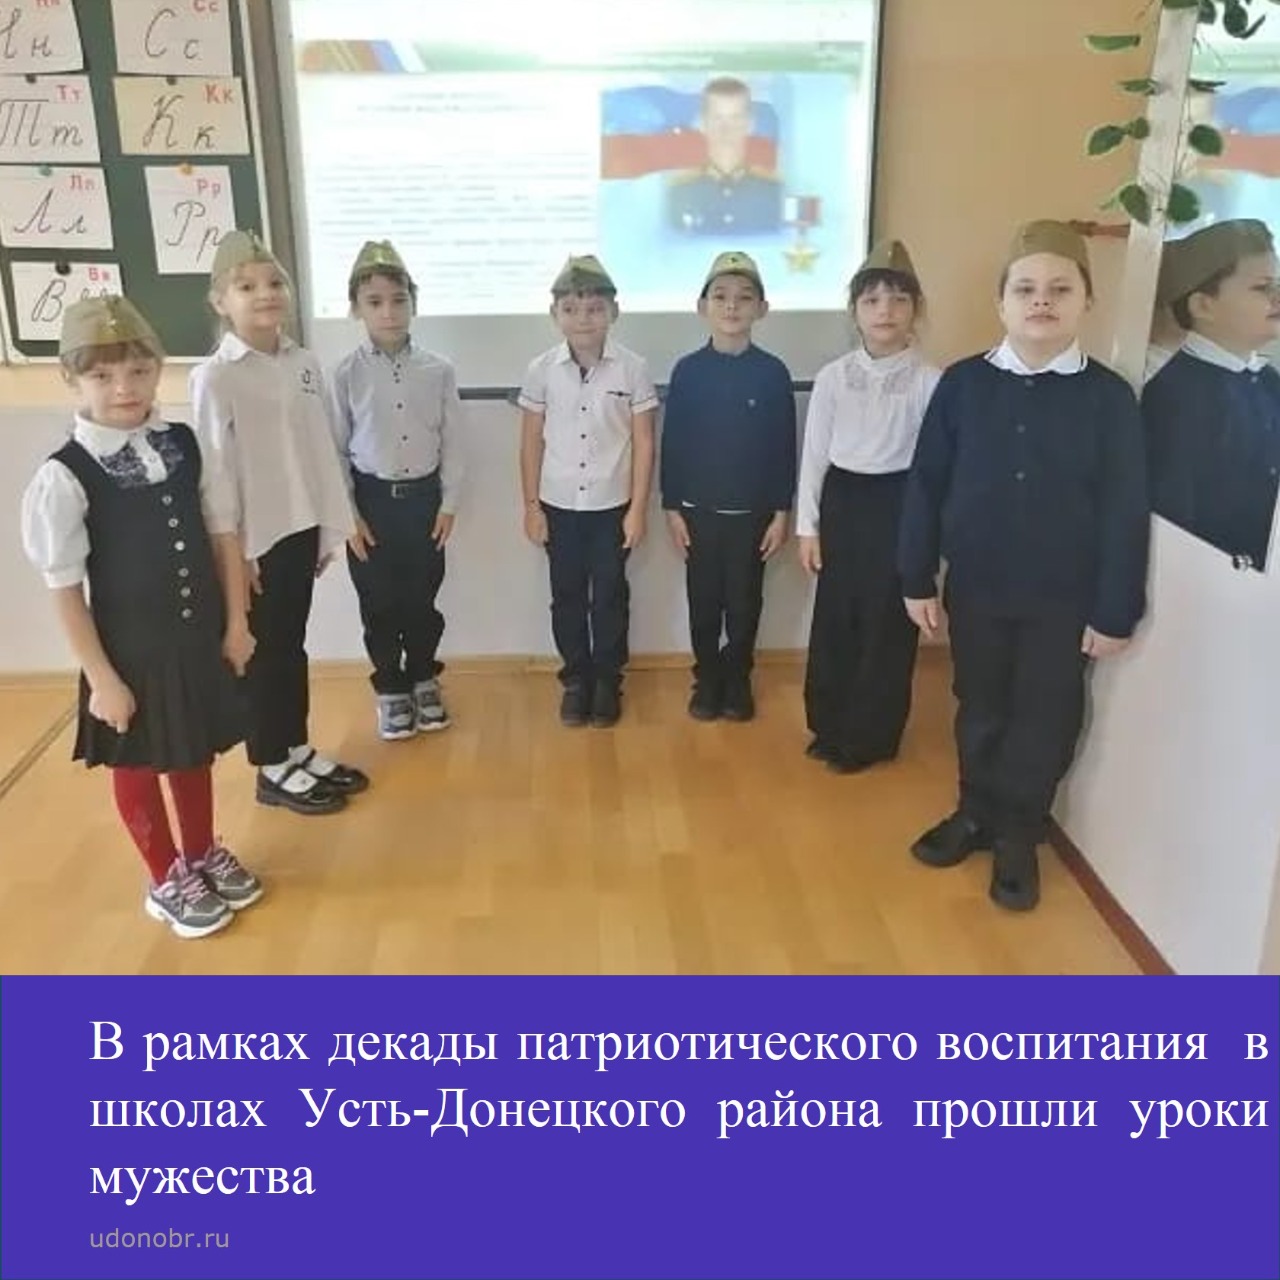 В рамках декады патриотического воспитания в общеобразовательных организациях Усть-Донецкого района прошли уроки мужества.